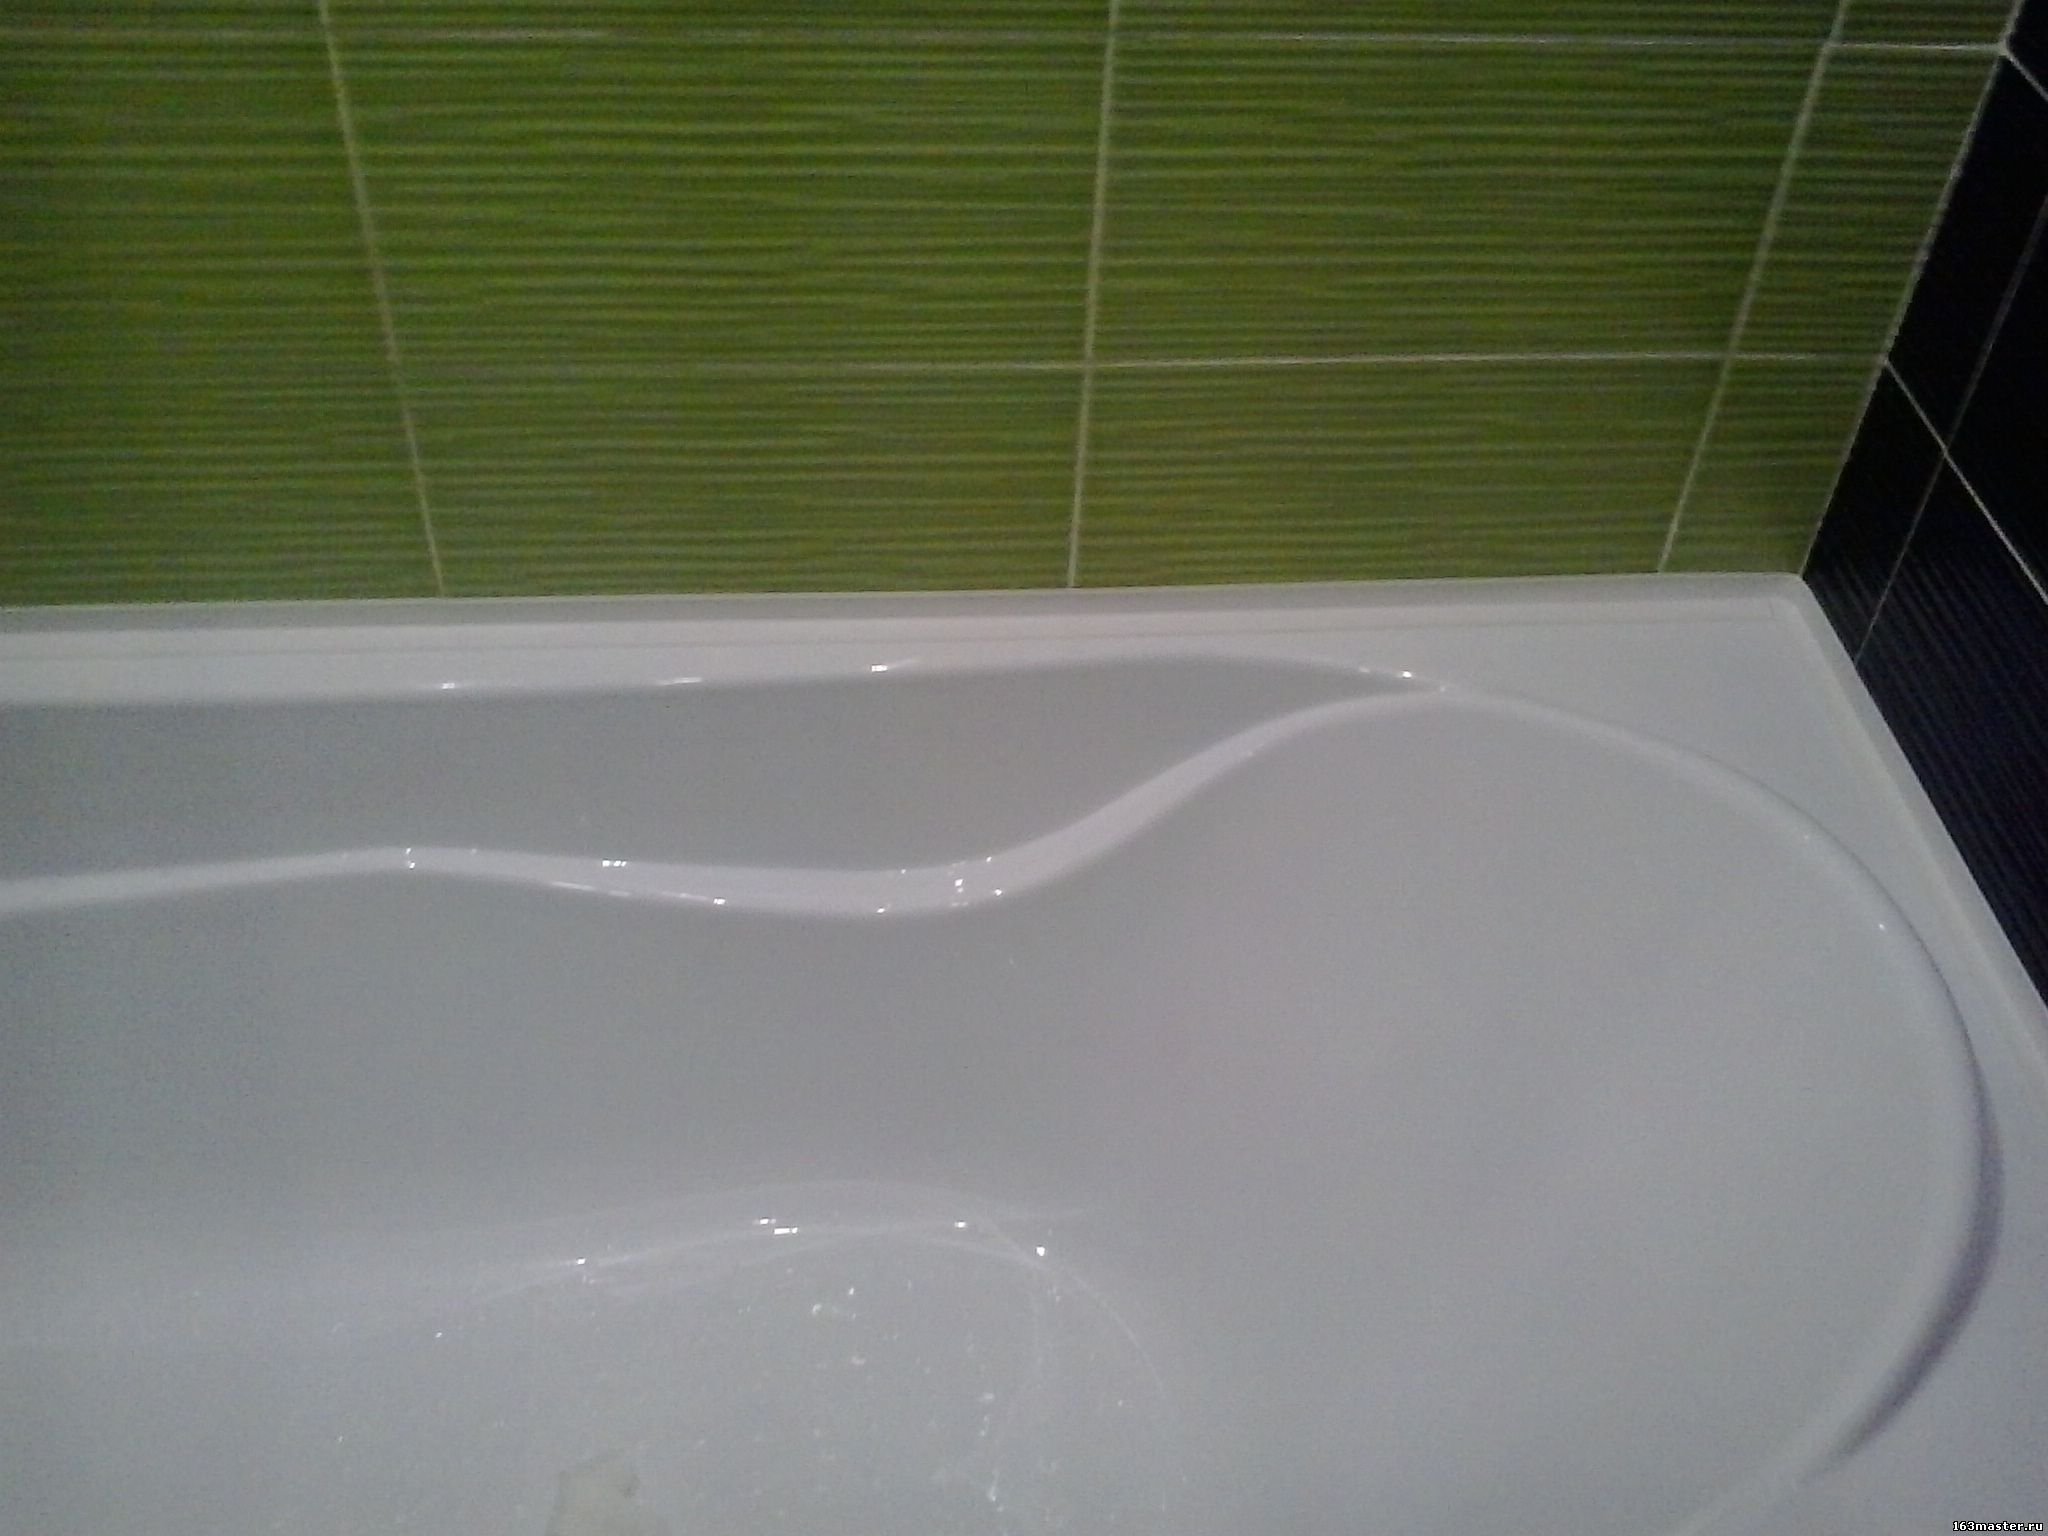 Бортик для воды на пол. Бордюрная лента для акриловой ванны. Бордюрная плитка для ванной. Бордюр между ванной и плиткой. Уголок между ванной и плиткой.